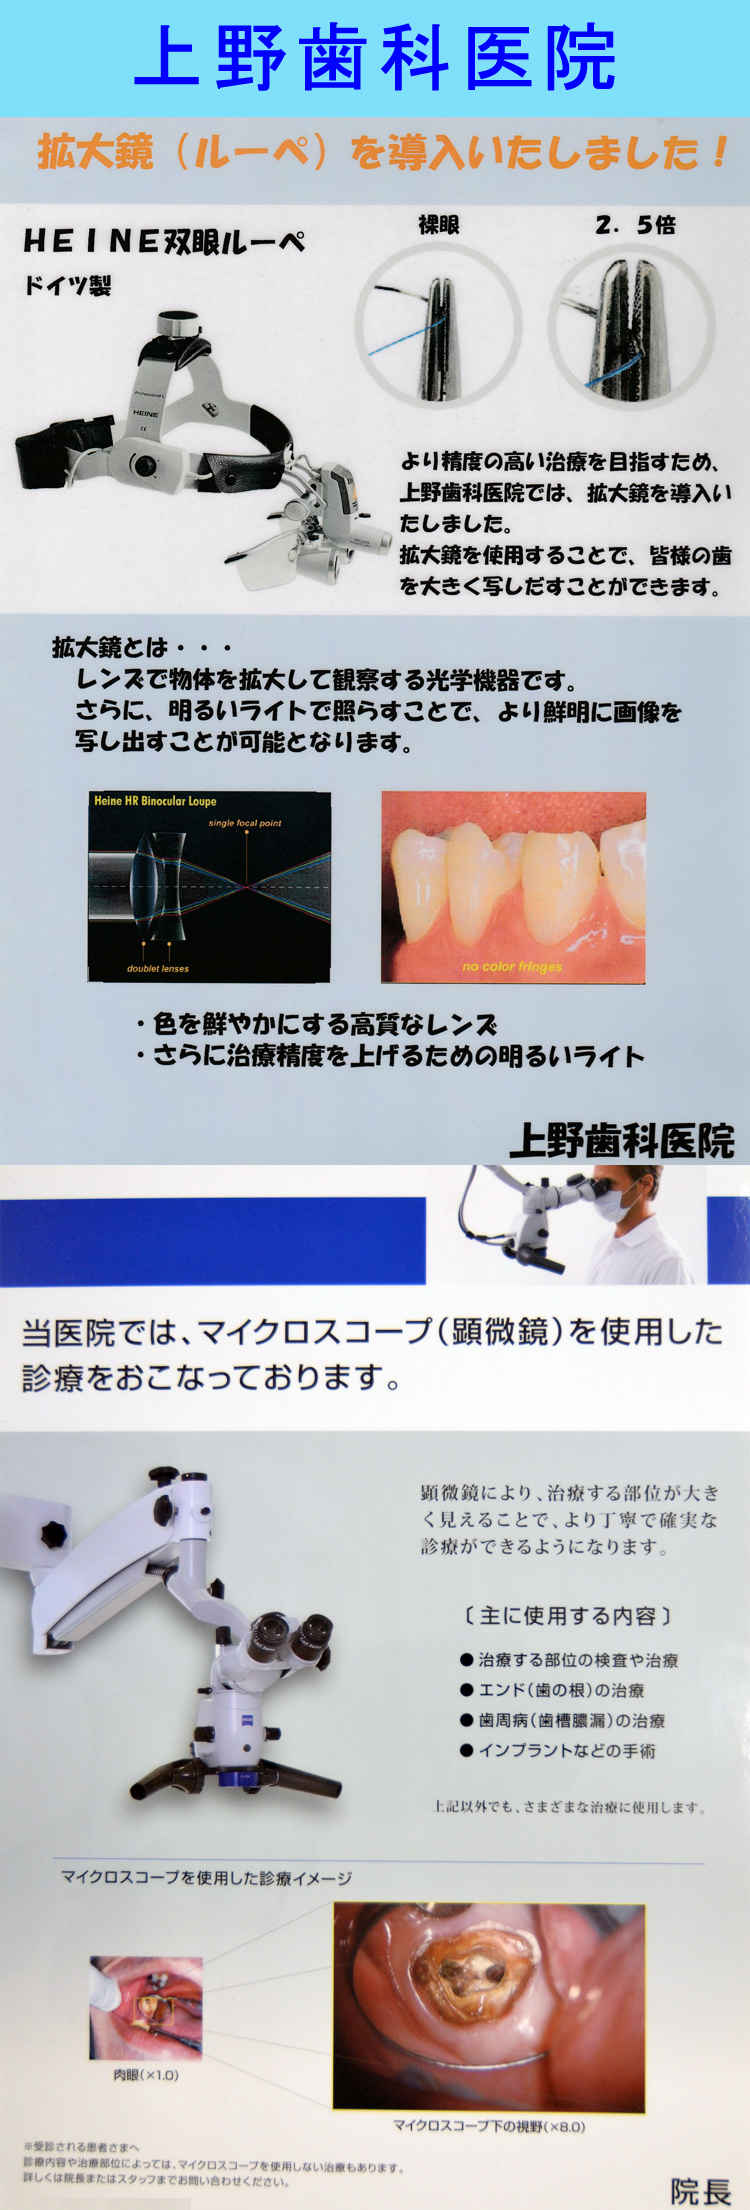 上野歯科医院のお知らせ内容